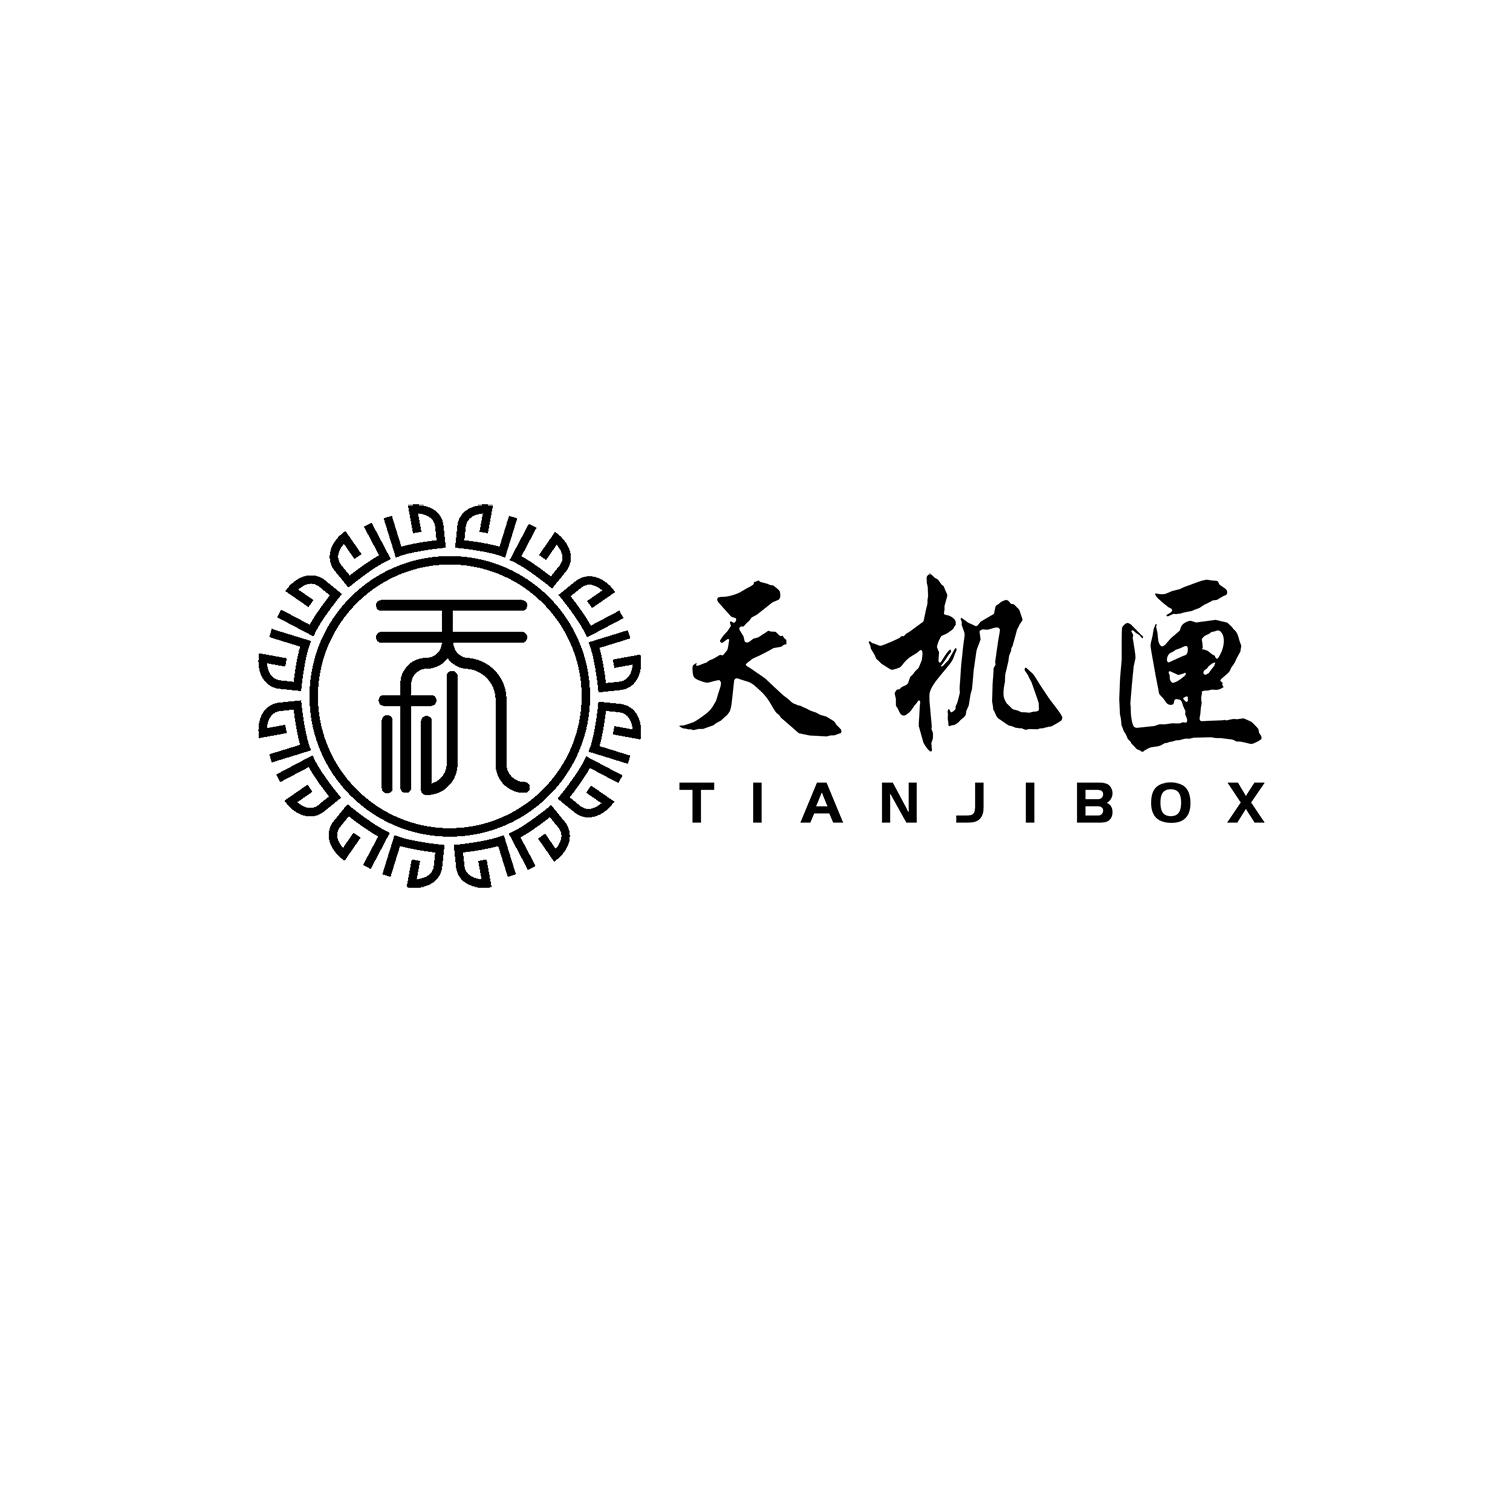 天机匣 TIANJIBOX 商标公告